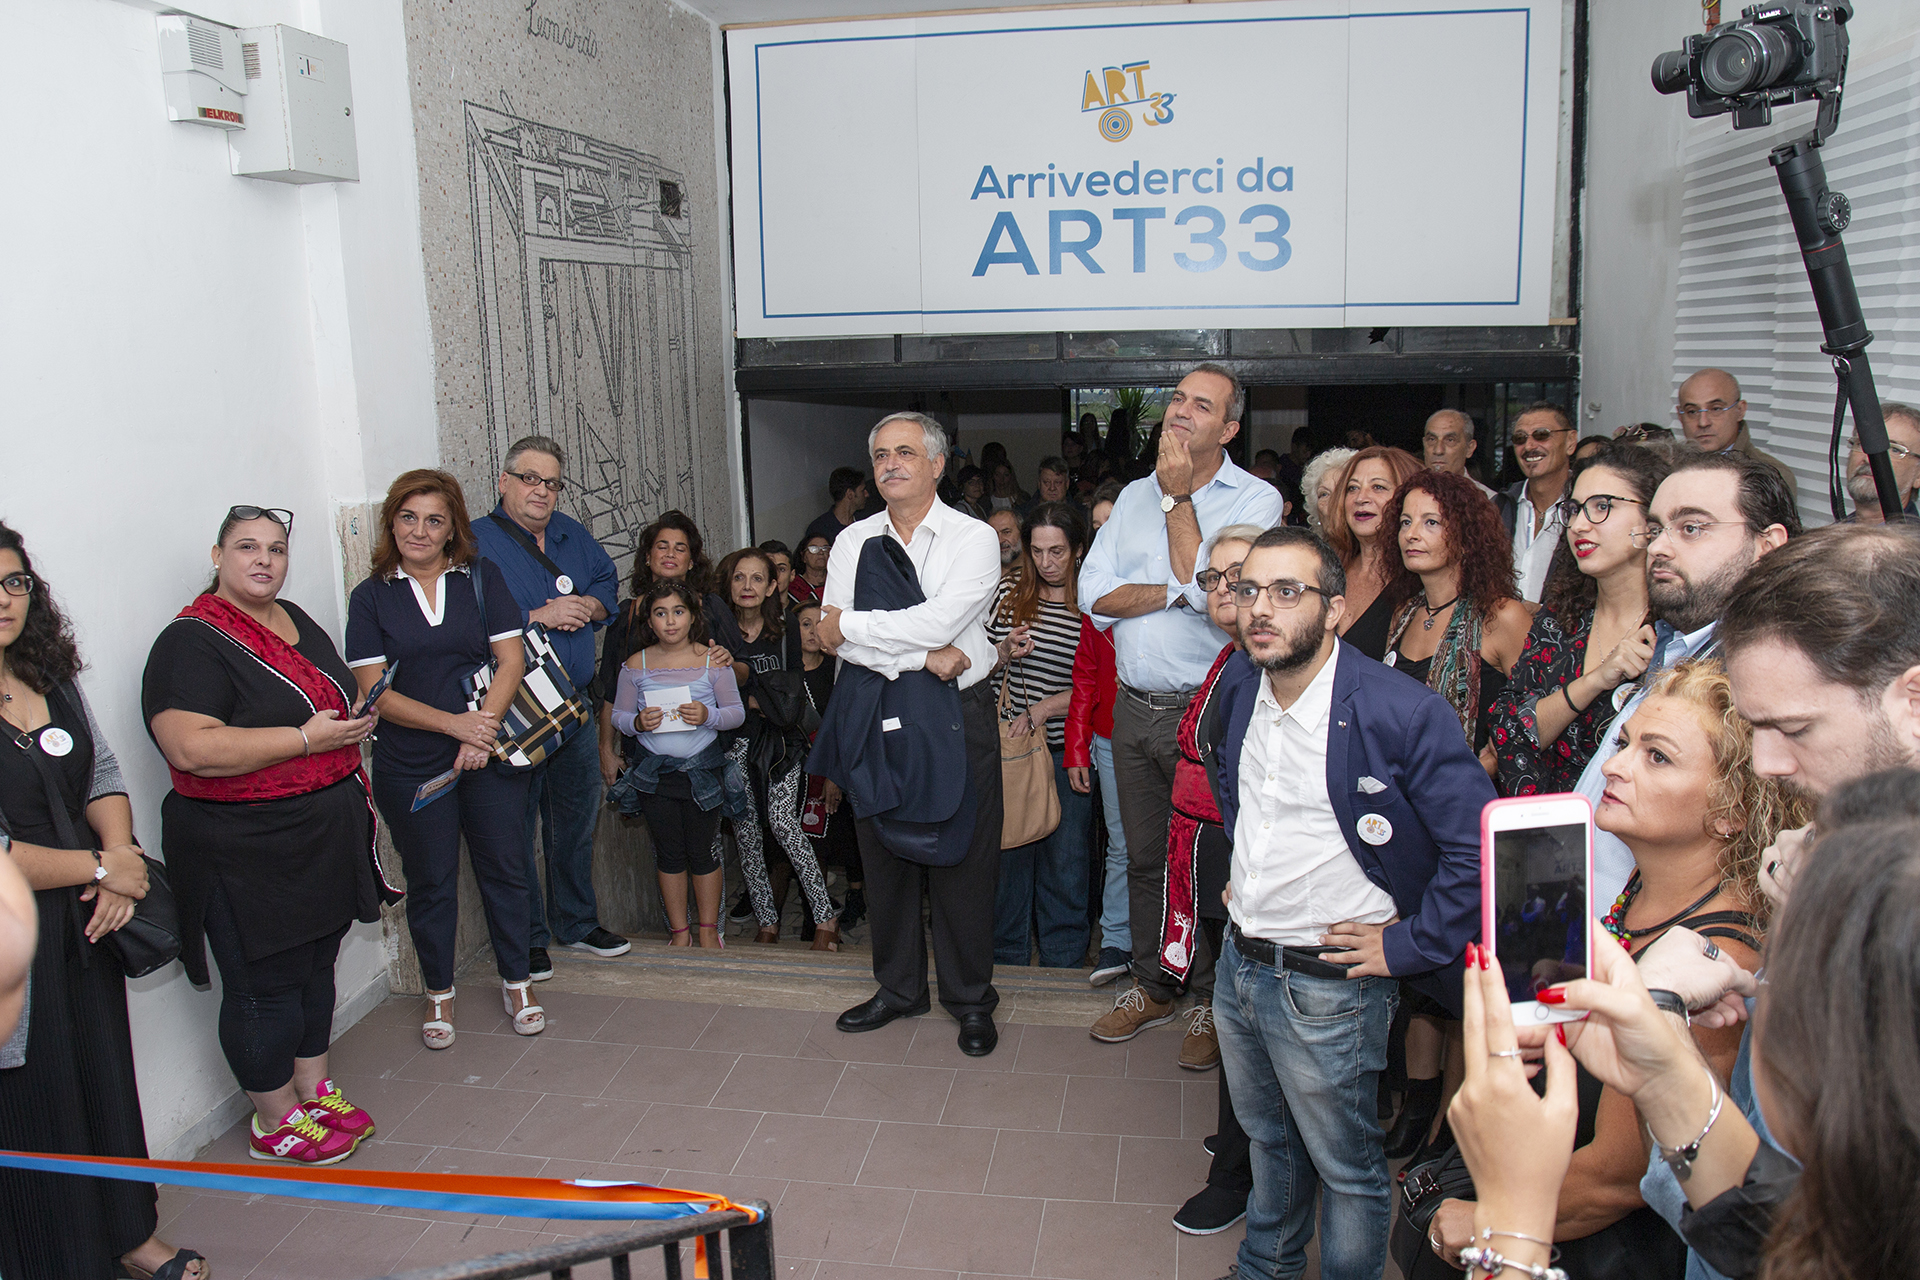 Napoli, apre Art33: a San Giovanni uno dei primi hub culturali d’Italia